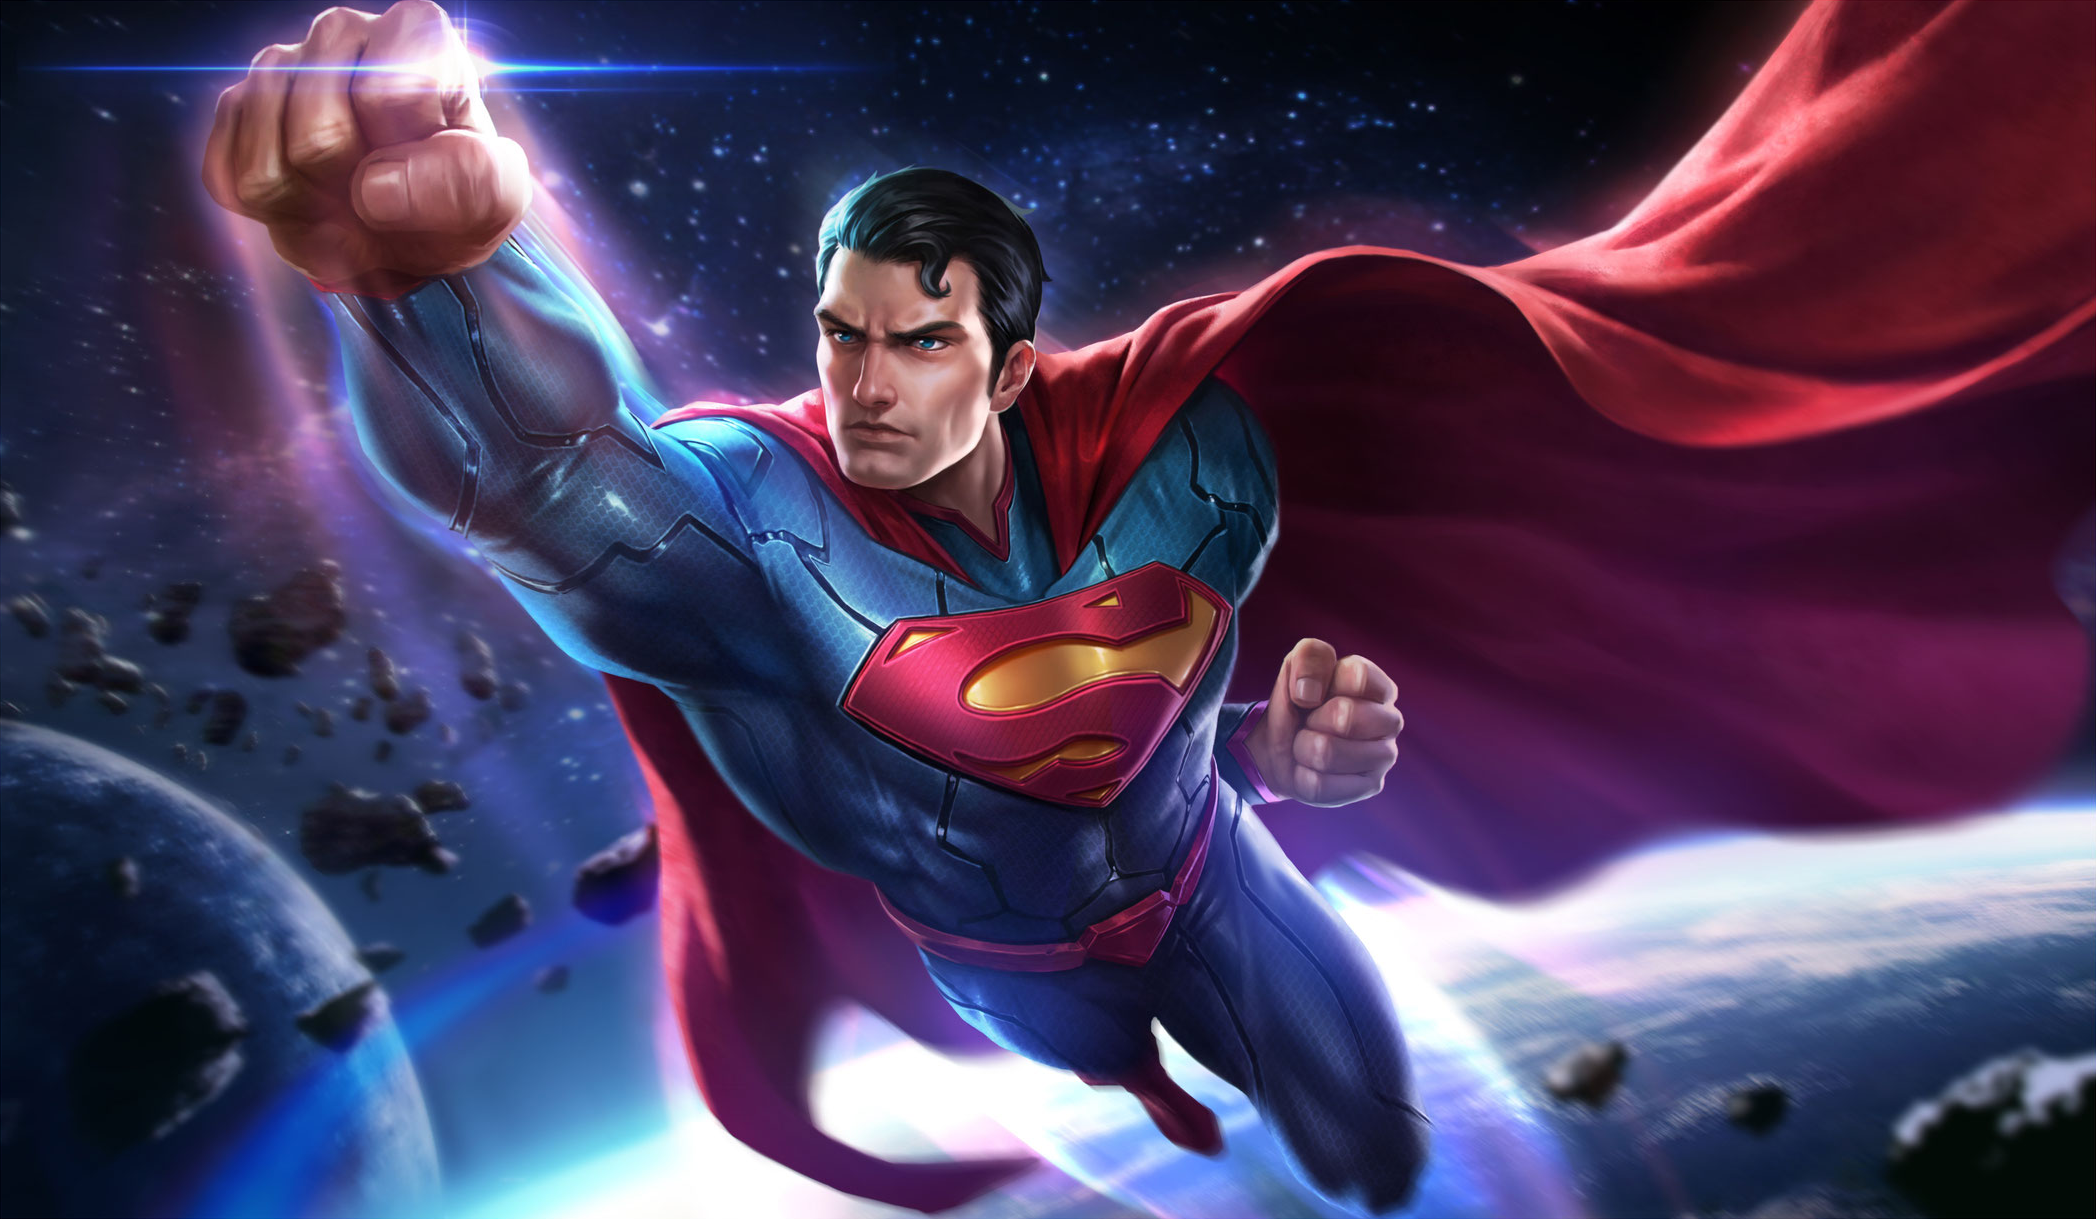 Superman by Carlindo Costa